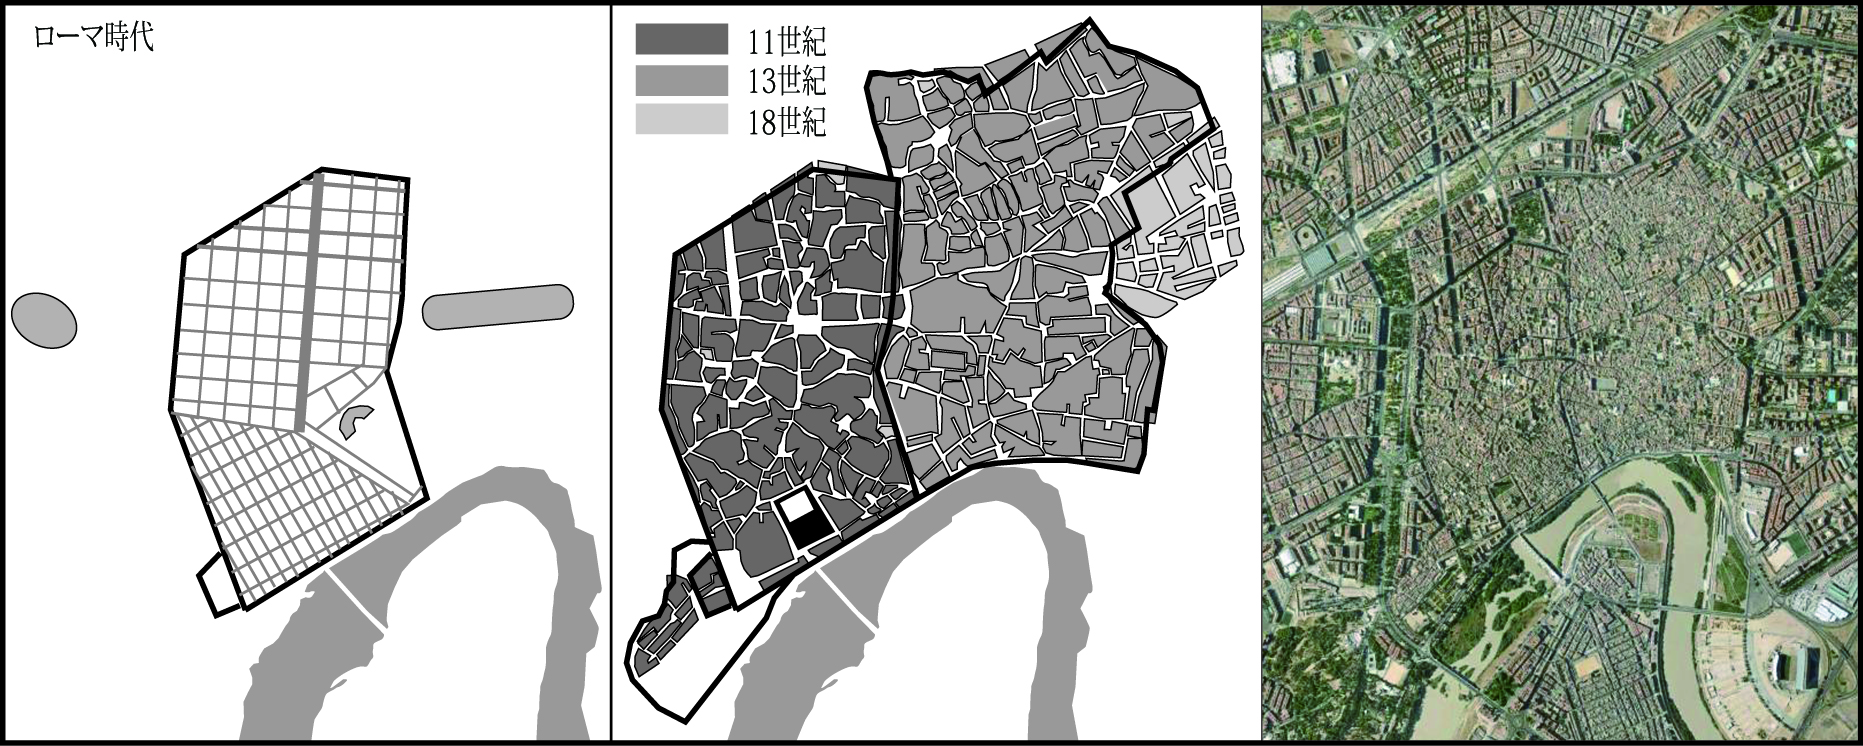 図2-1 コルドバ 発展の歴史 地図と写真